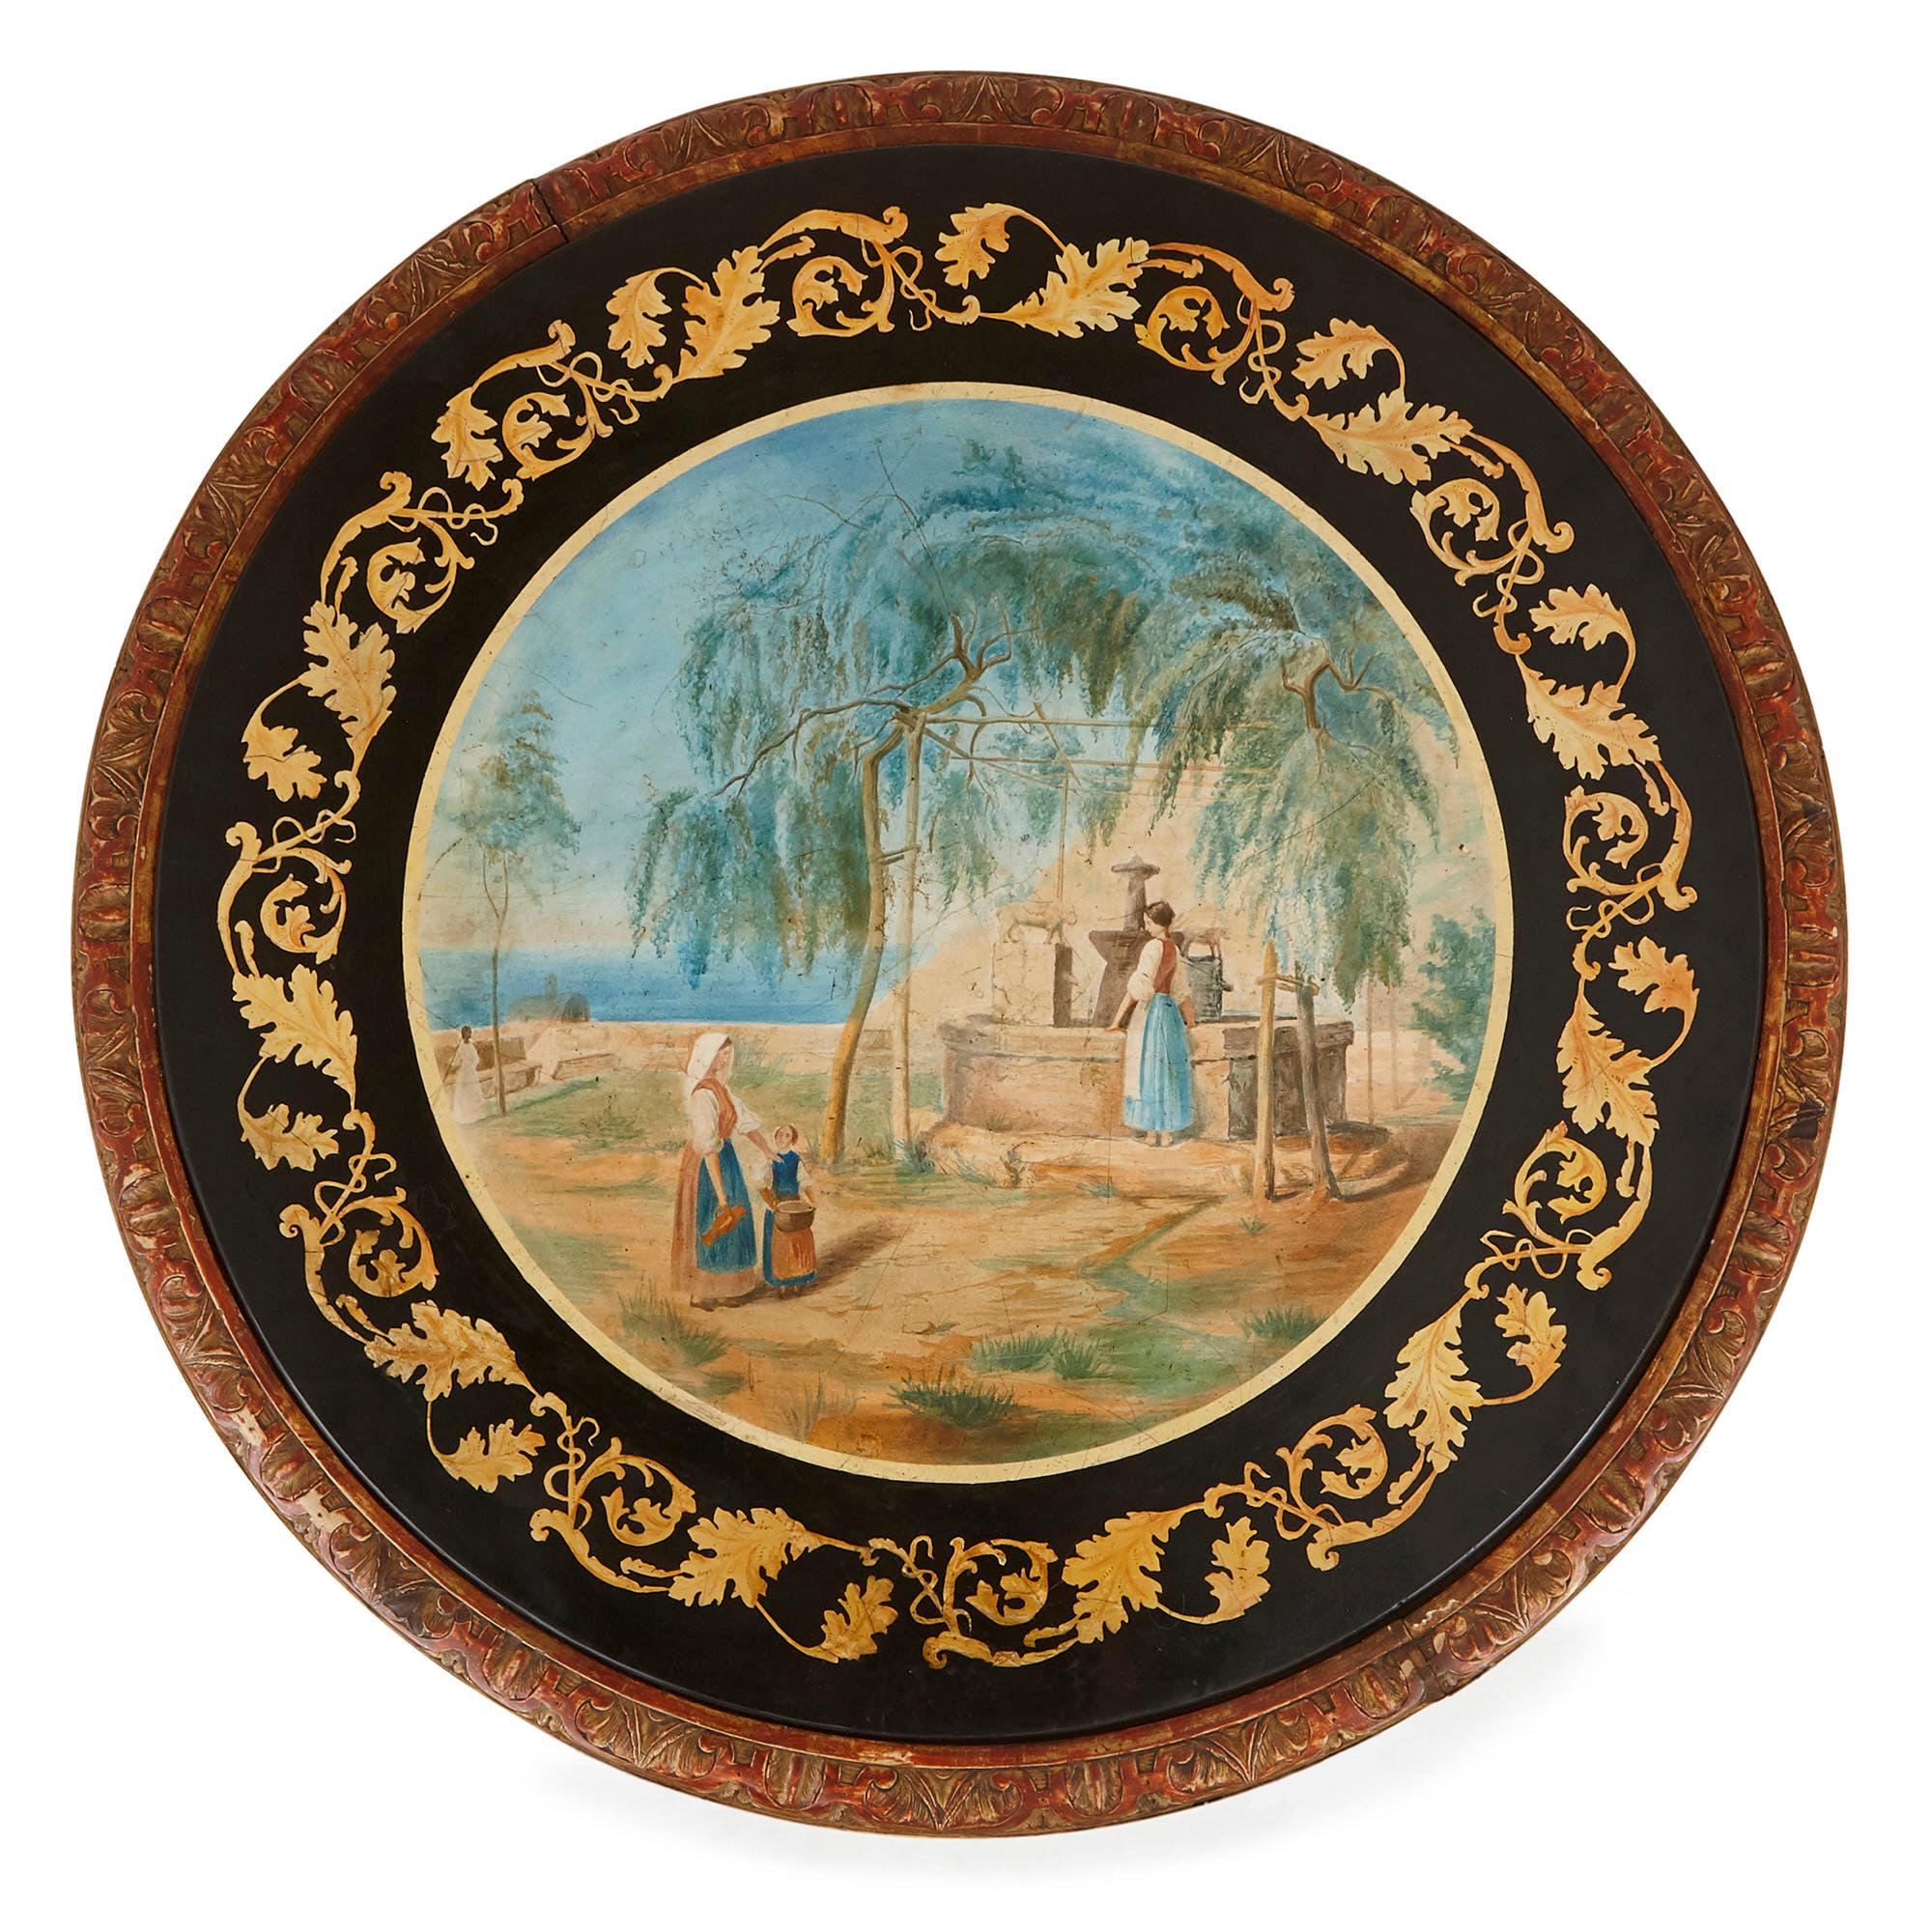 Cette merveilleuse table est conçue d'après les célèbres frères Della Valle (Italie, milieu du XIXe siècle). Les frères étaient des artisans exceptionnellement habiles, spécialisés dans la production de meubles en scagliola (imitation de marbre).